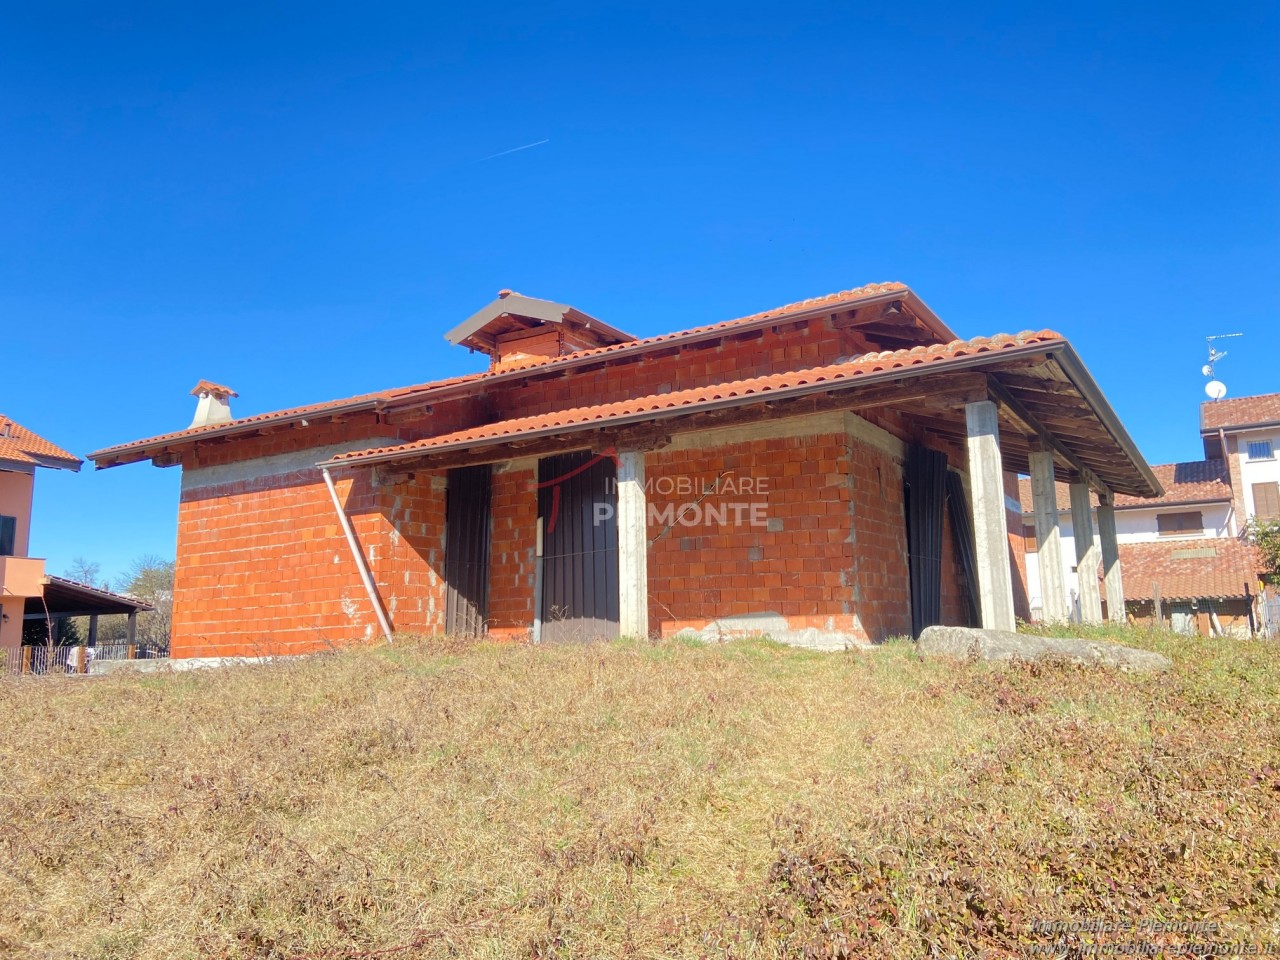 Villa in vendita a Agrate Conturbia, 6 locali, prezzo € 150.000 | CambioCasa.it